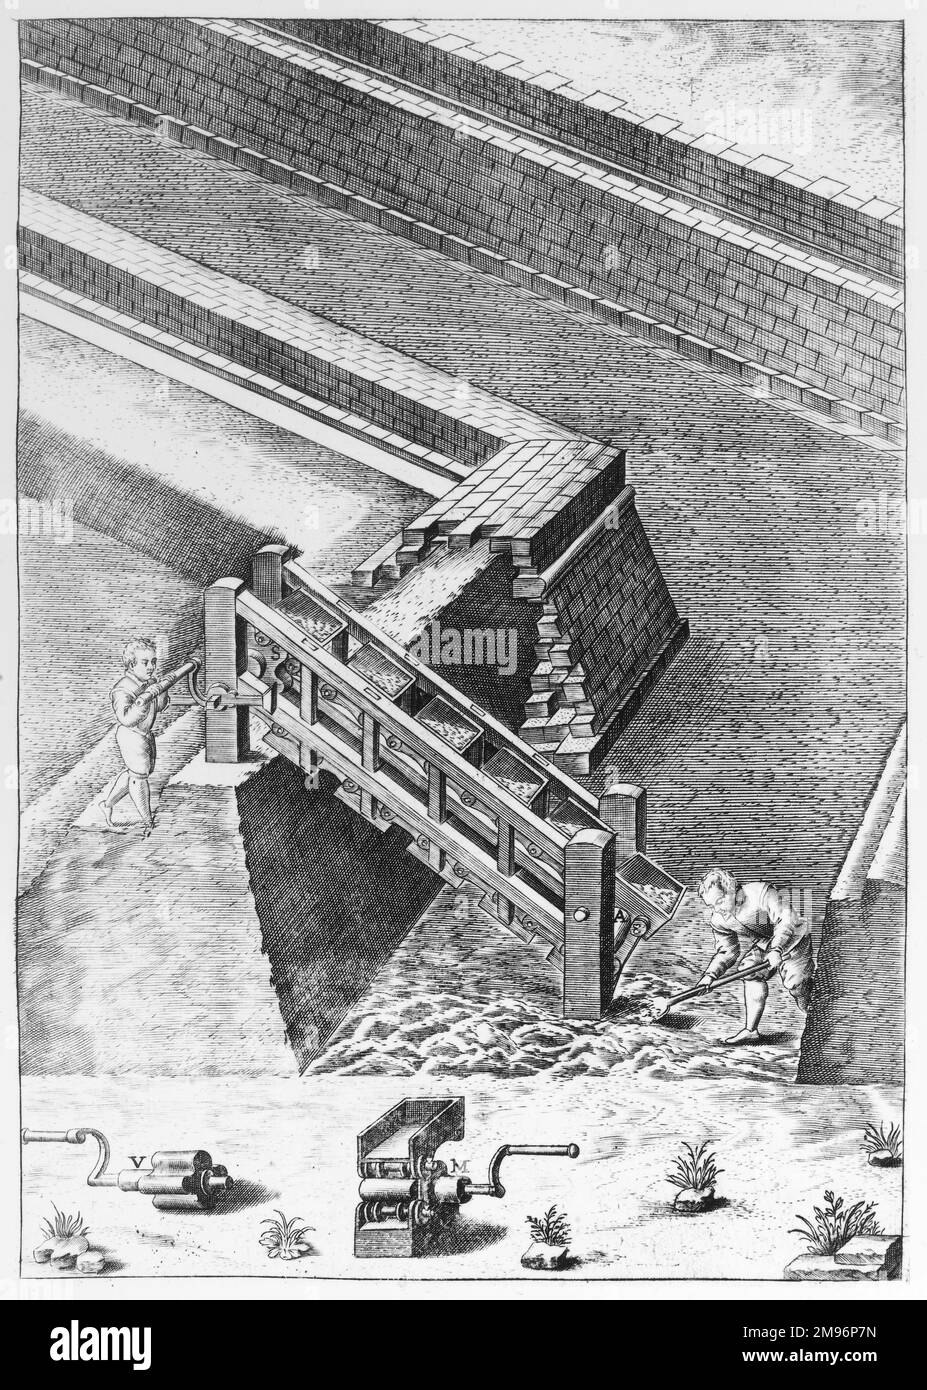 Incisione dettagliata di una tecnica di costruzione di canali del 16th° secolo che assomiglia in qualche modo ad un nastro trasportatore. Foto Stock